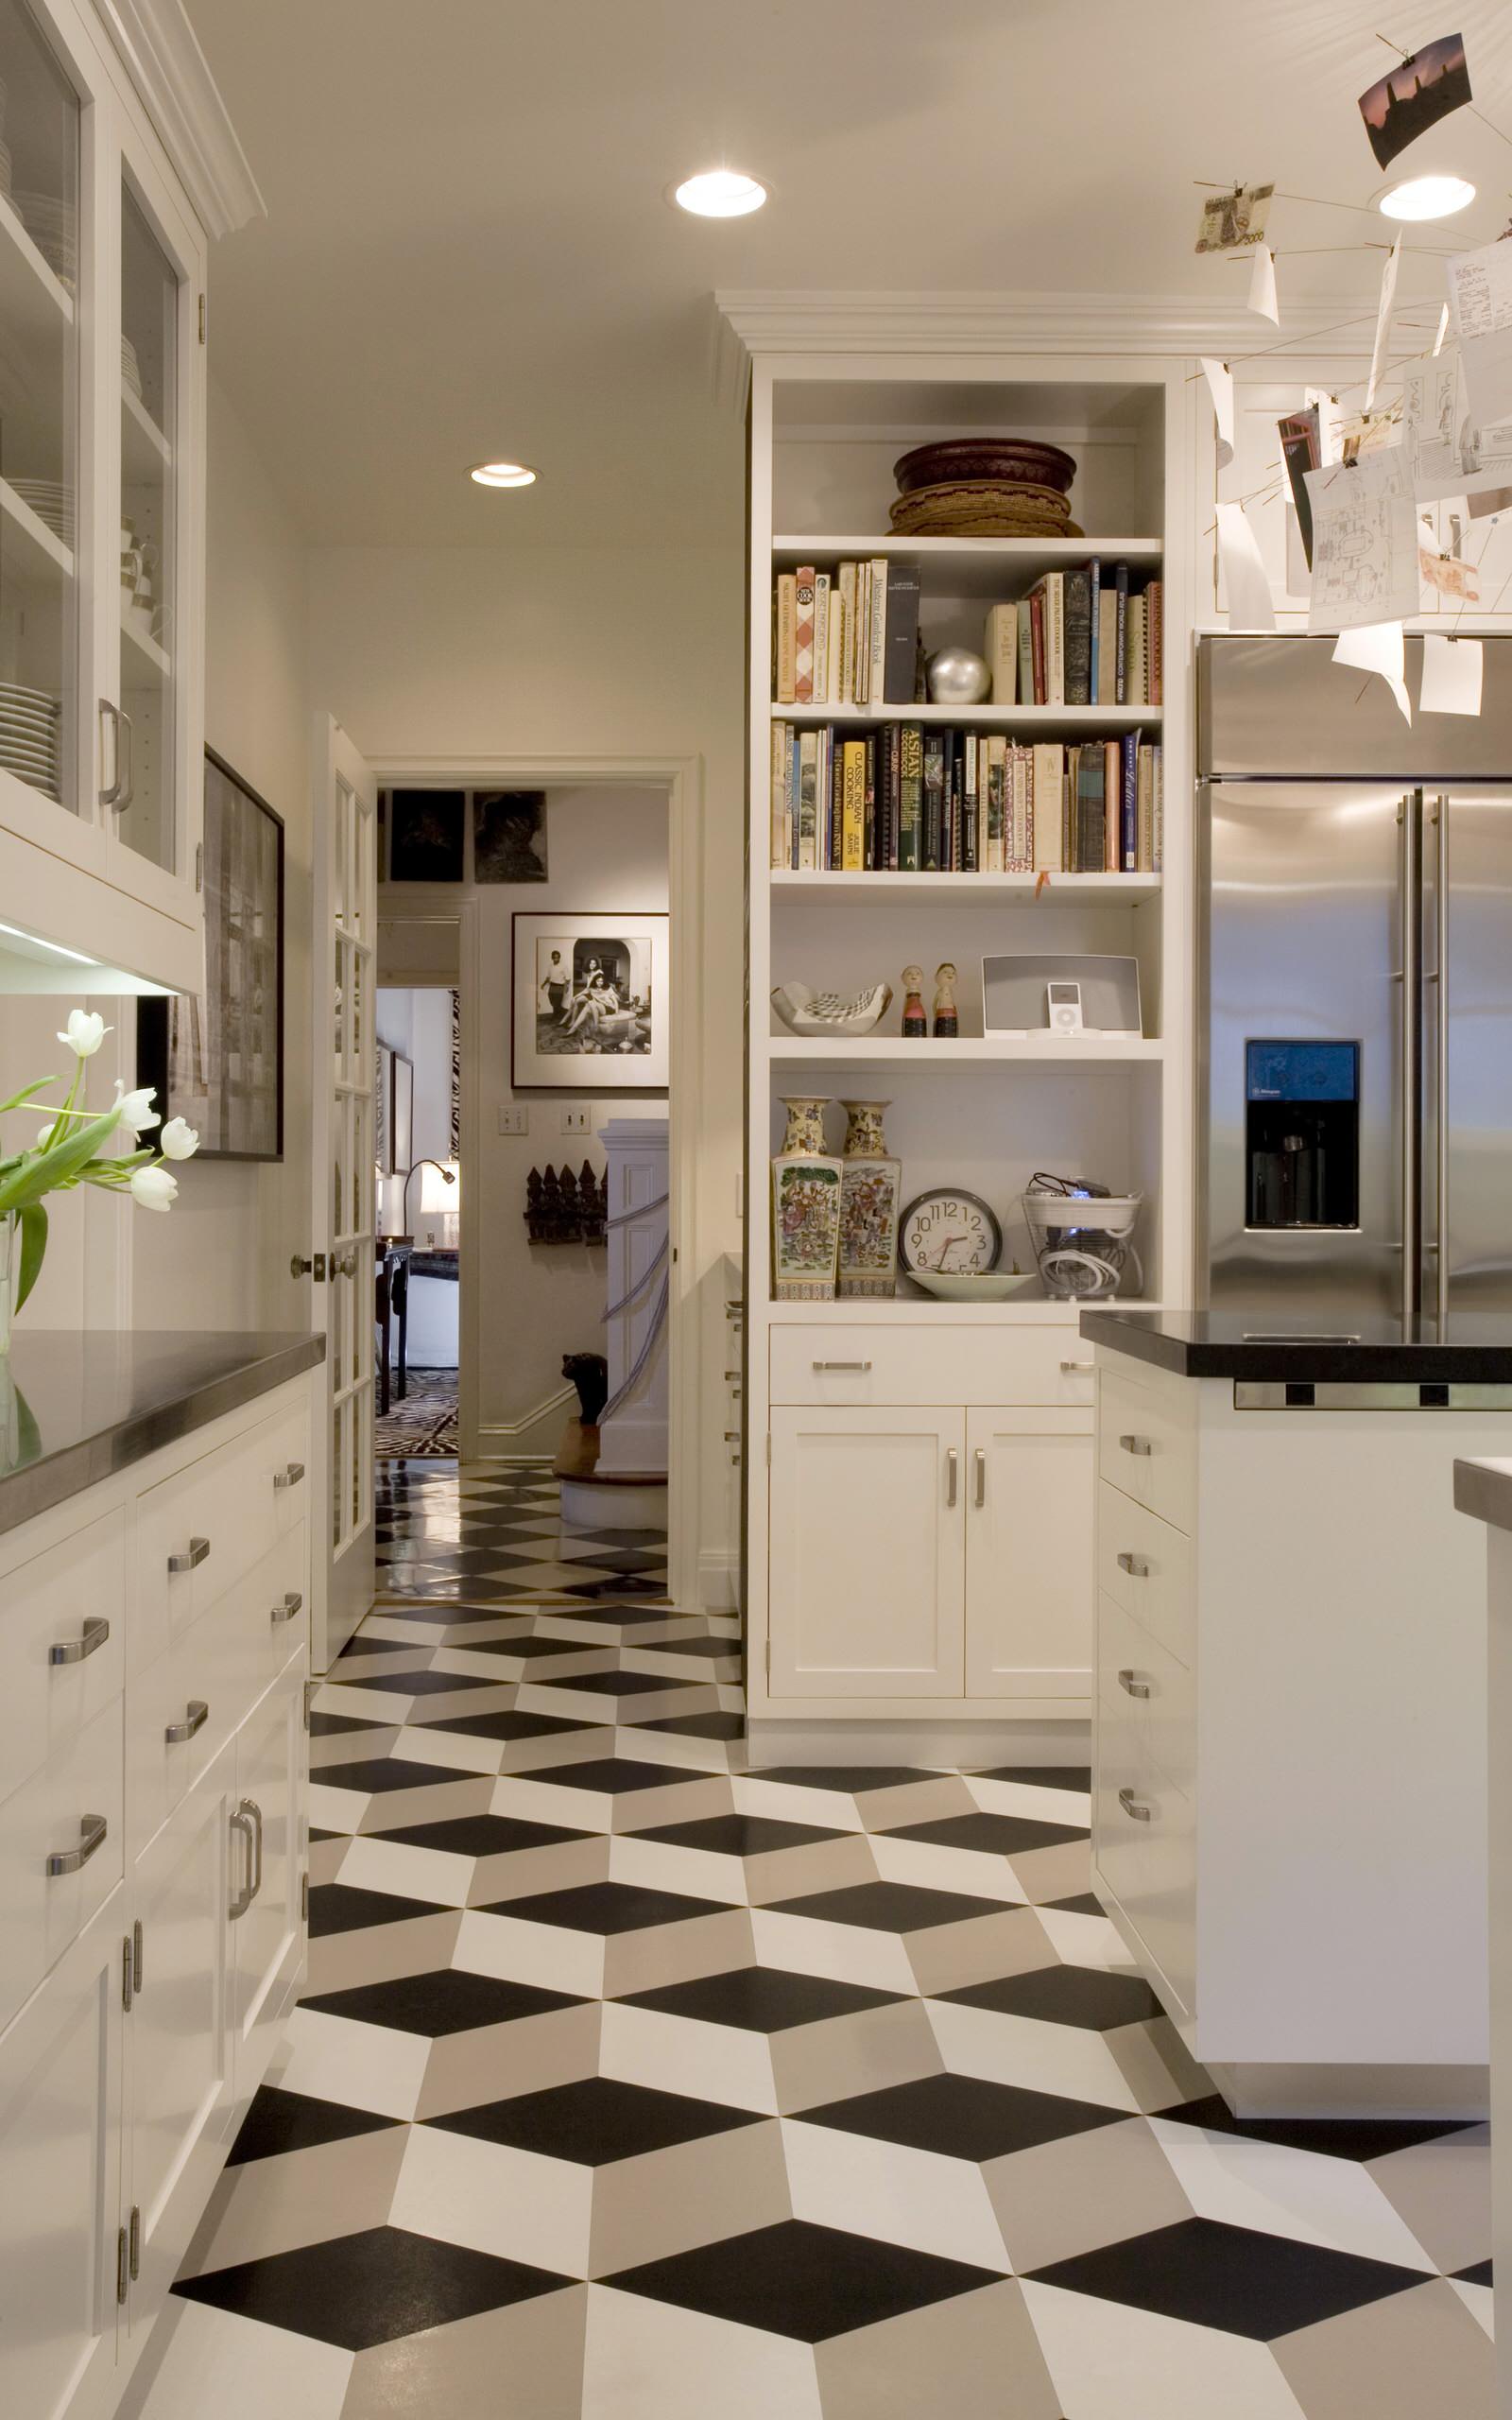 White Tile Floor Kitchen Ideas, Black And White Kitchen Floor Tiles